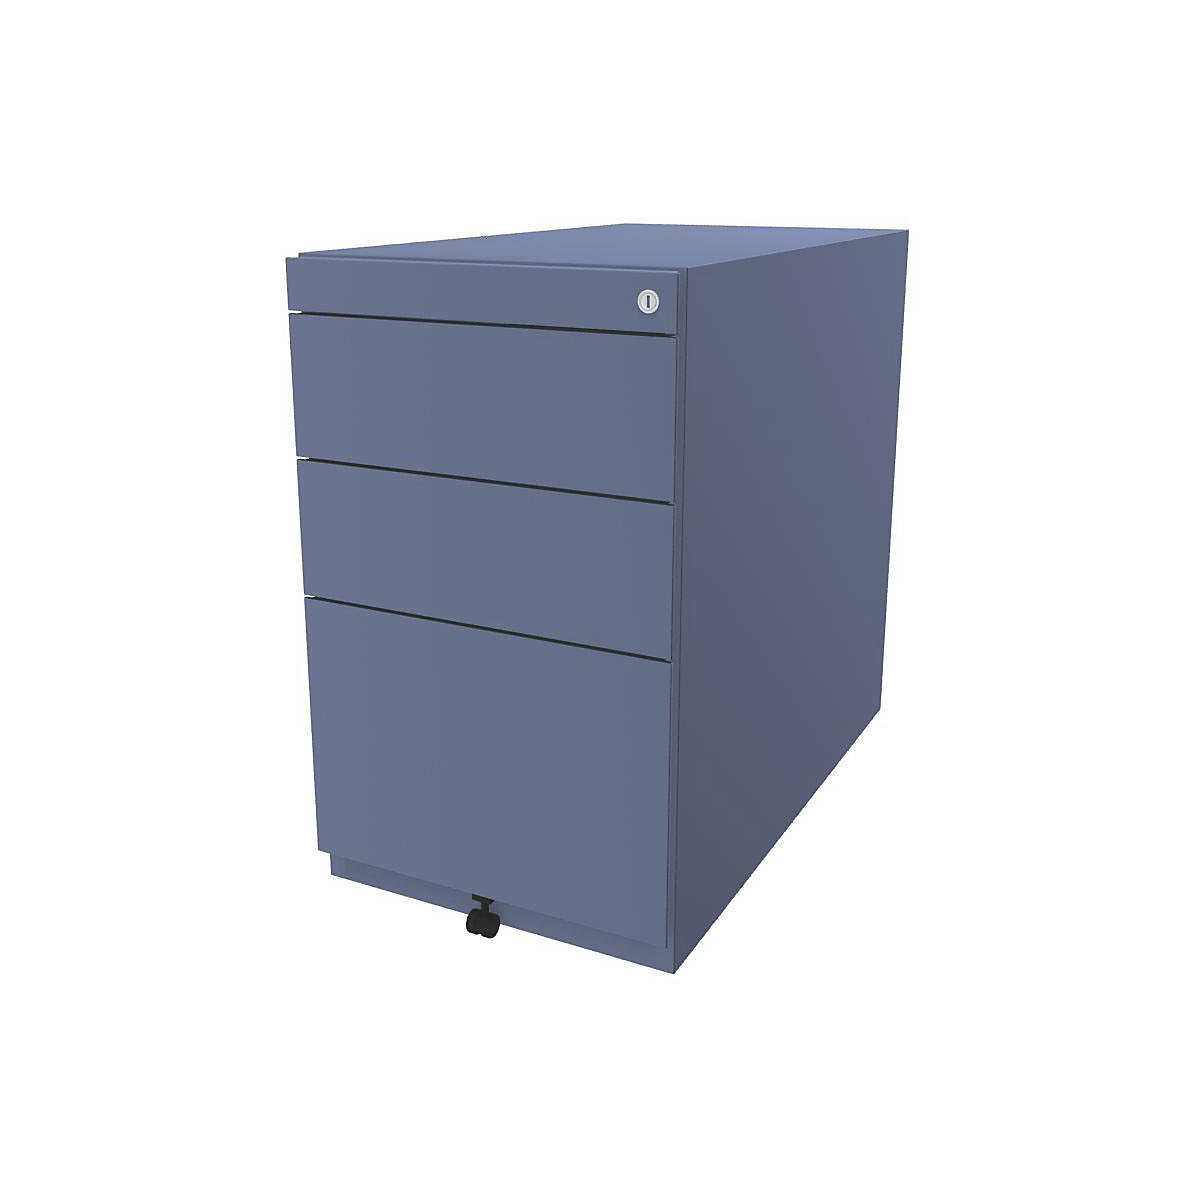 BISLEY Standcontainer Note™, mit 2 Universalschubladen, 1 Hängeregistratur, ohne Top, Tiefe 775 mm, blau